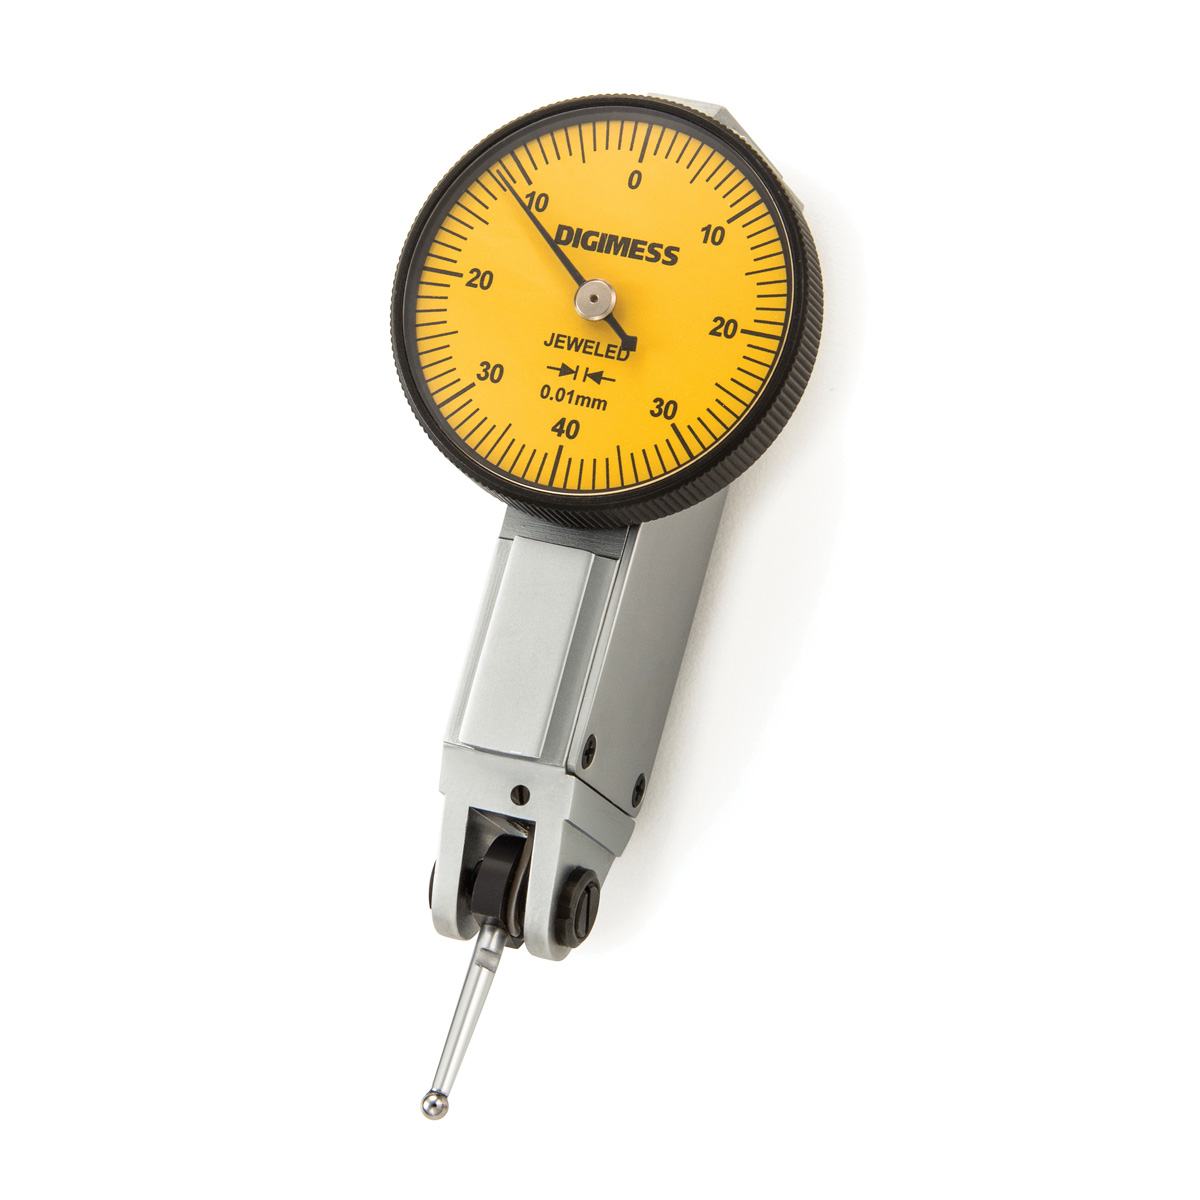 Relógio Apalpador de Alta Precisão 0 a 0,8mm com Graduação de 0,01mm-Digimess-121340-New